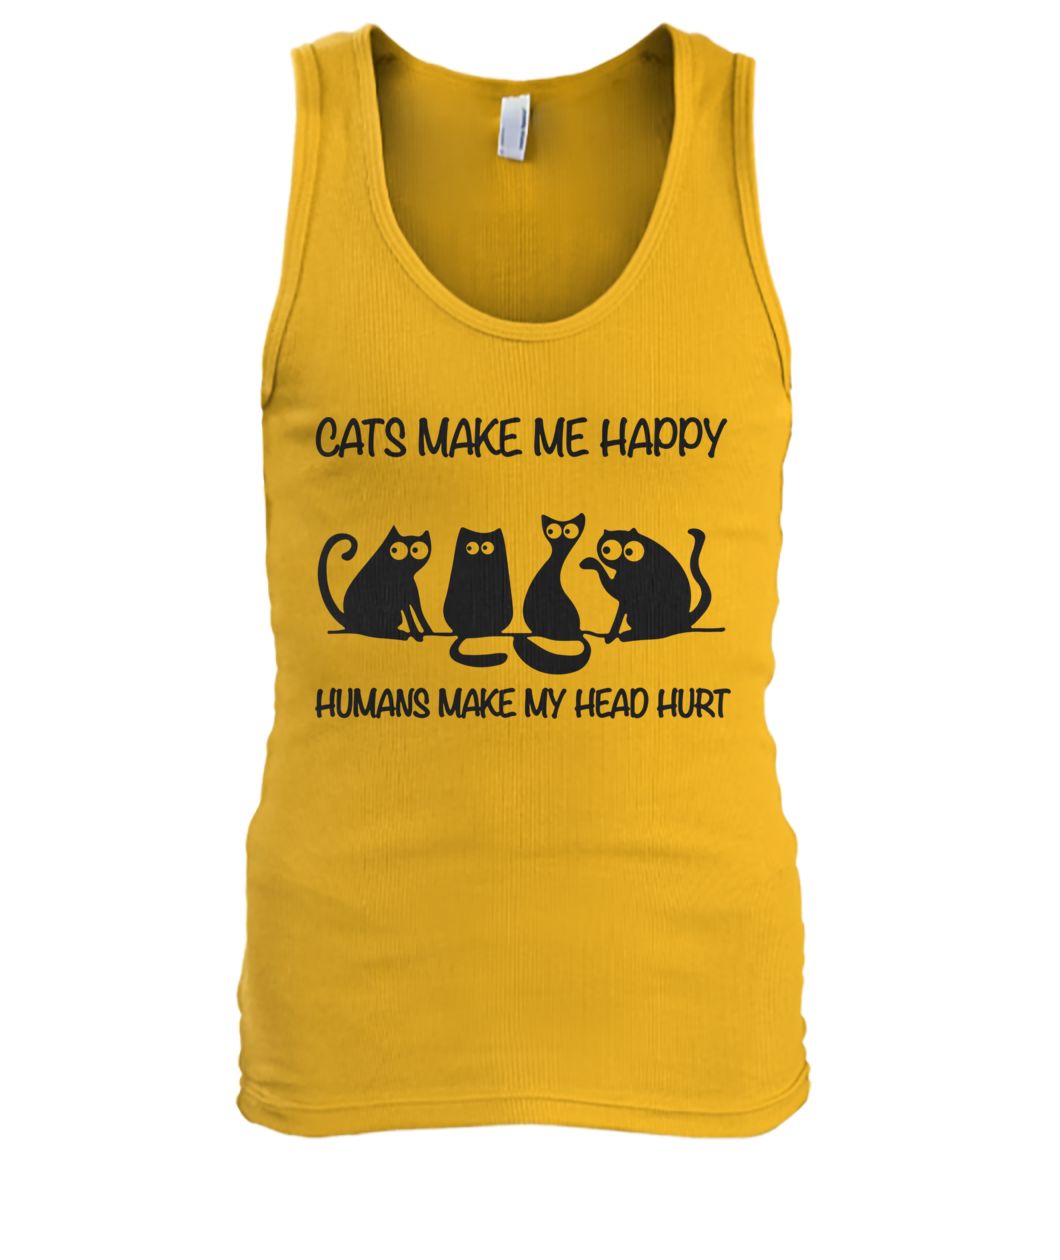 Cats make me happy humans make my head hurt men's tank top